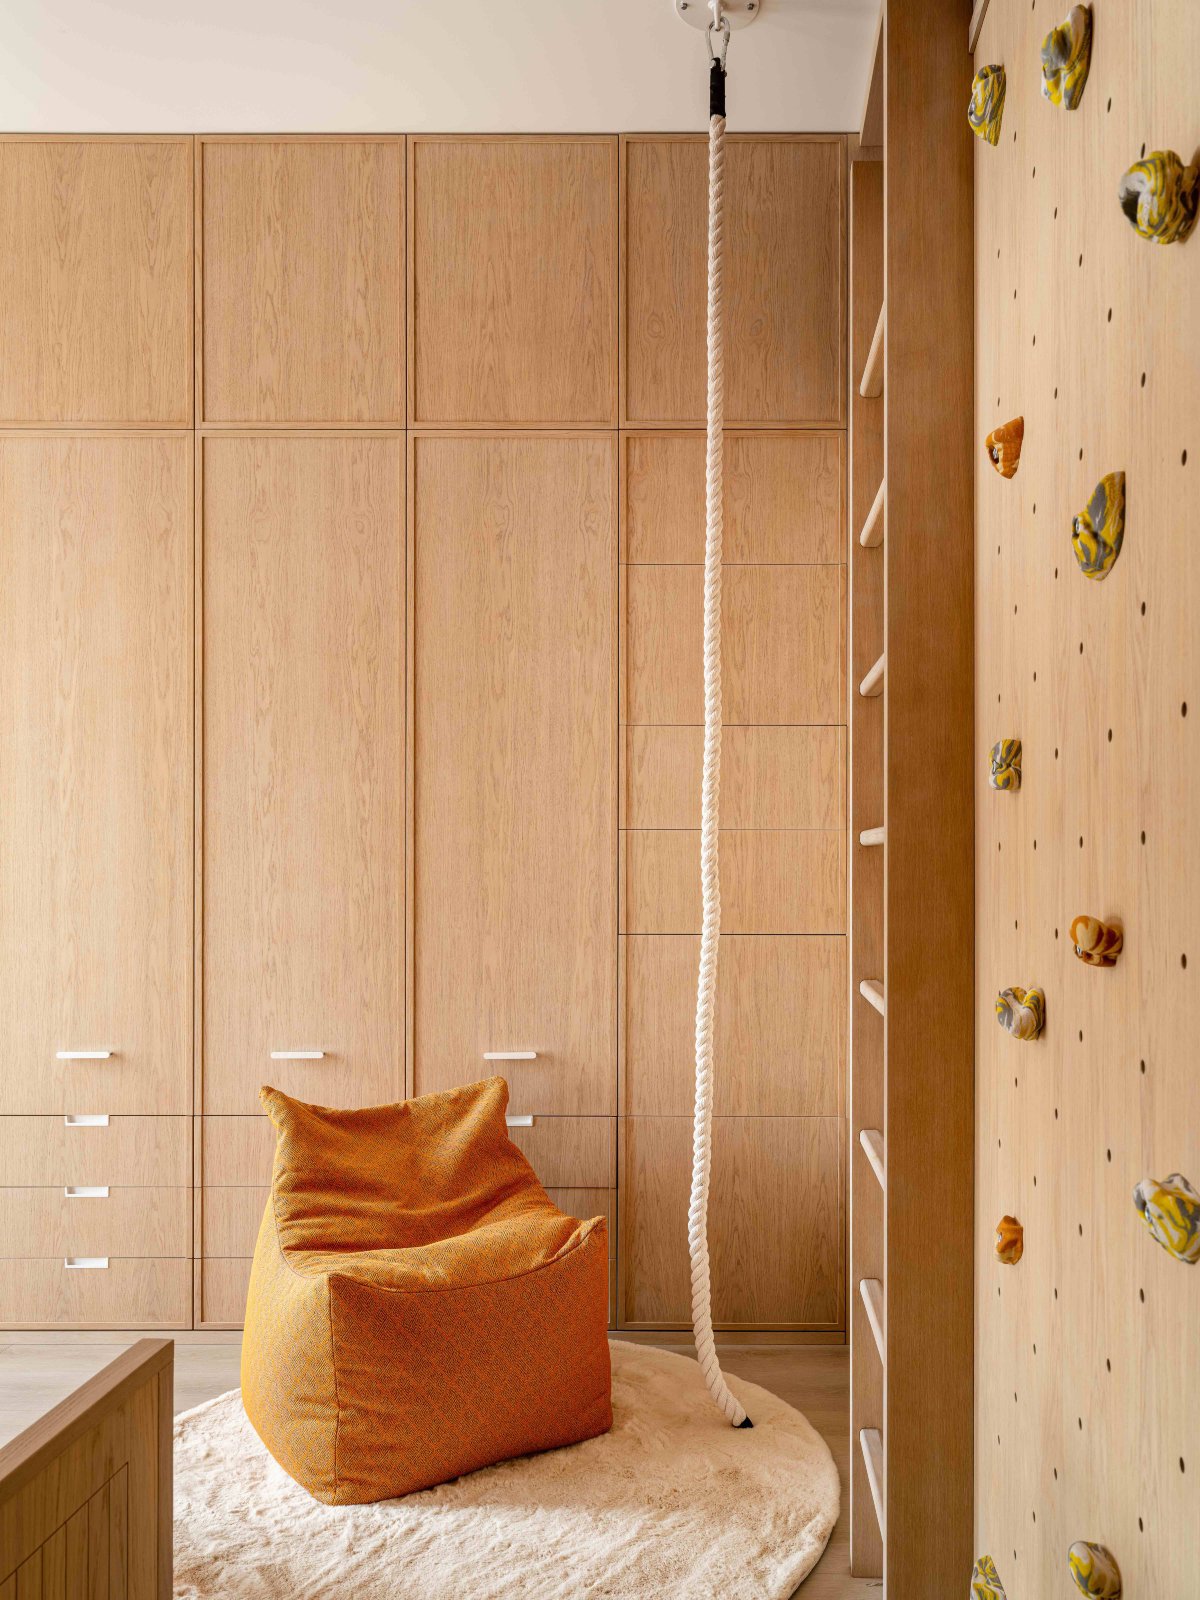 Habitación panelada en madera con rocódromo en una de sus paredes